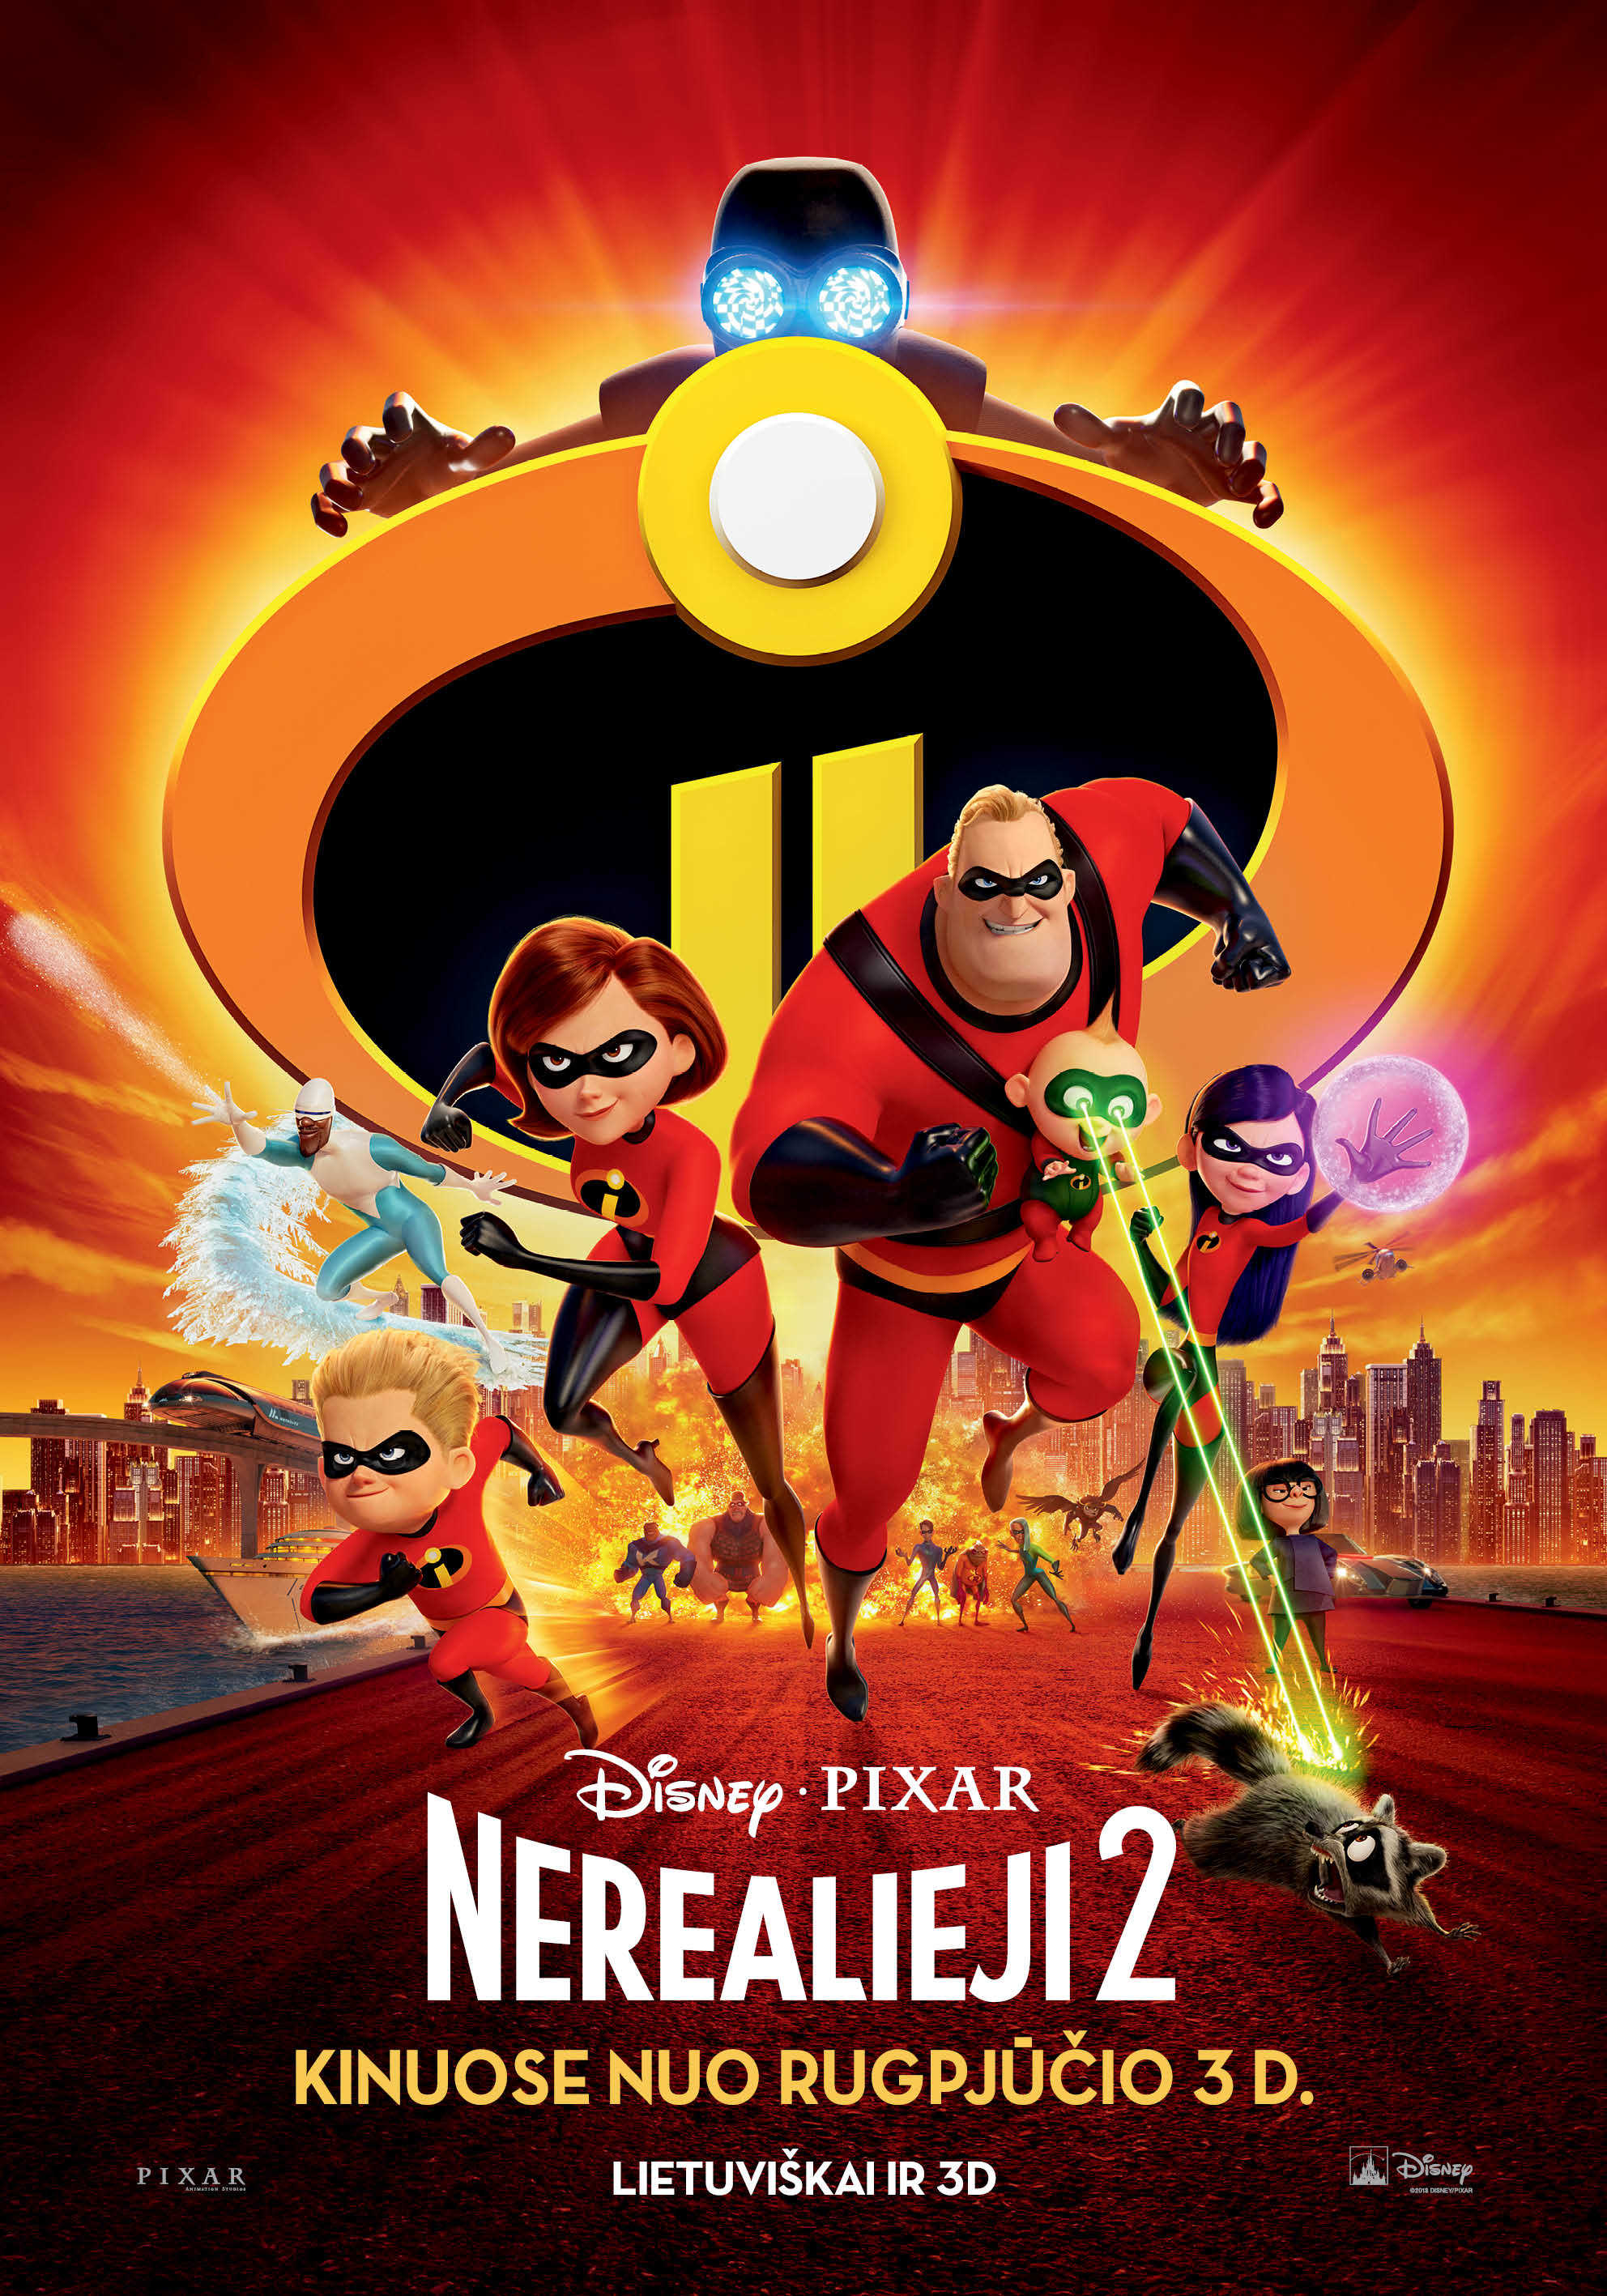 Nerealieji 2 (Incredibles 2)